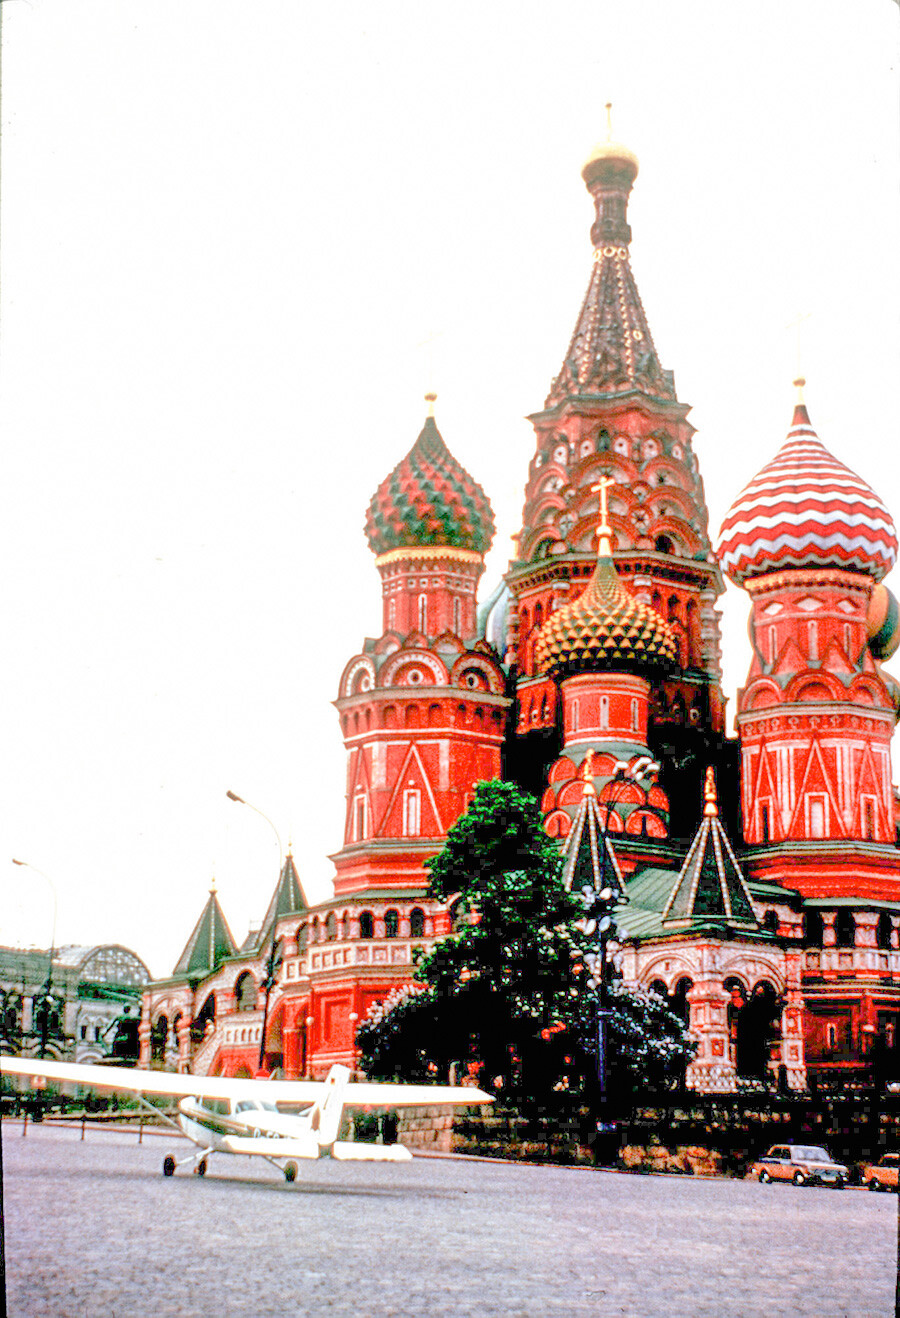 Am 28. Mai 1987 drang der deutsche Hobbyflieger Mathias Rust in den hoch gesicherten sowjetischen Luftraum ein und landete auf dem Roten Platz in Moskau.
